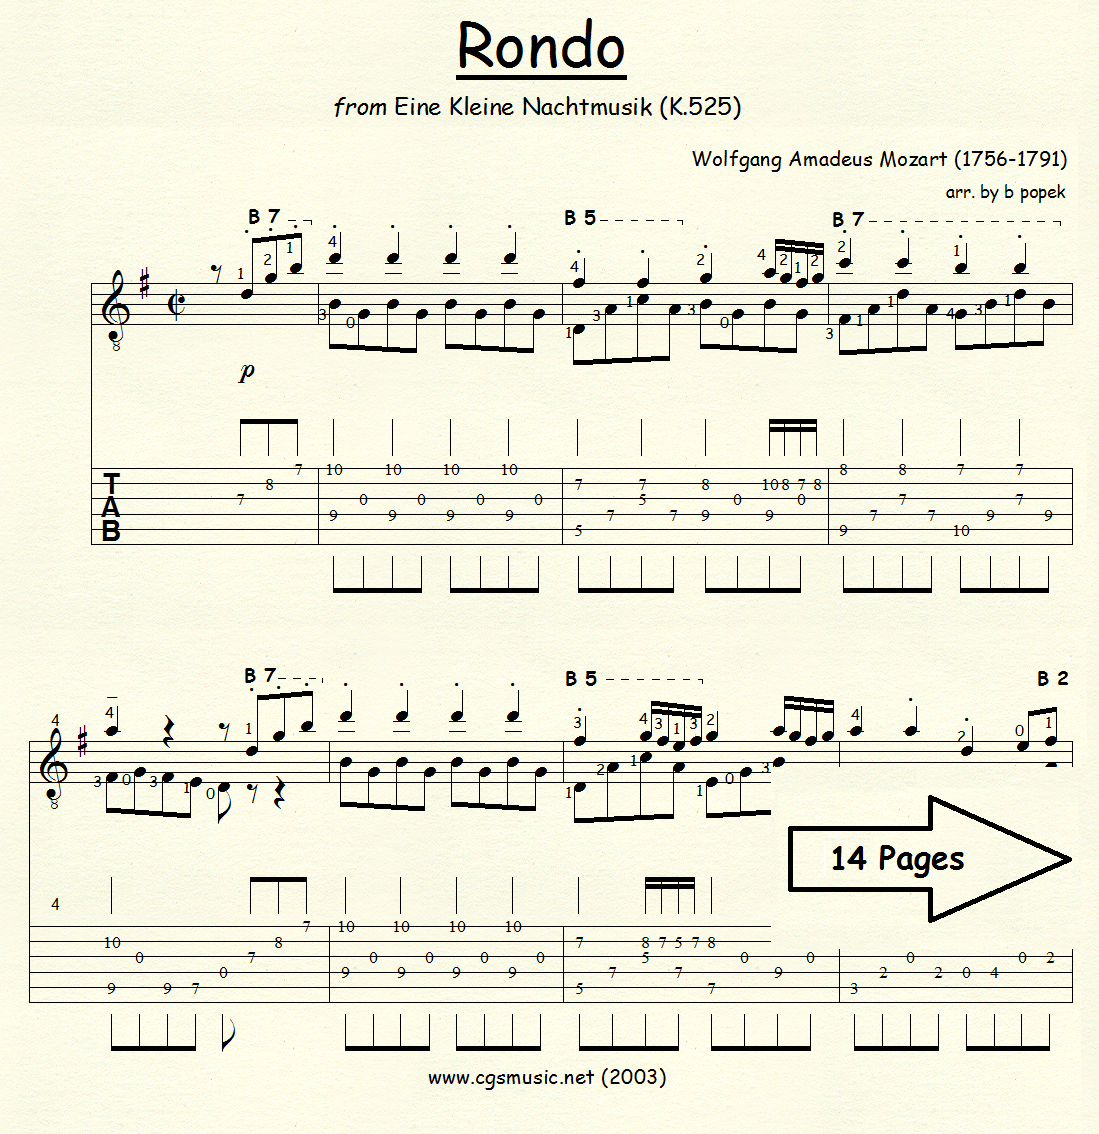 Rondo from Eine Kleine Nachtmusik (Mozart) for Classical Guitar in Tablature